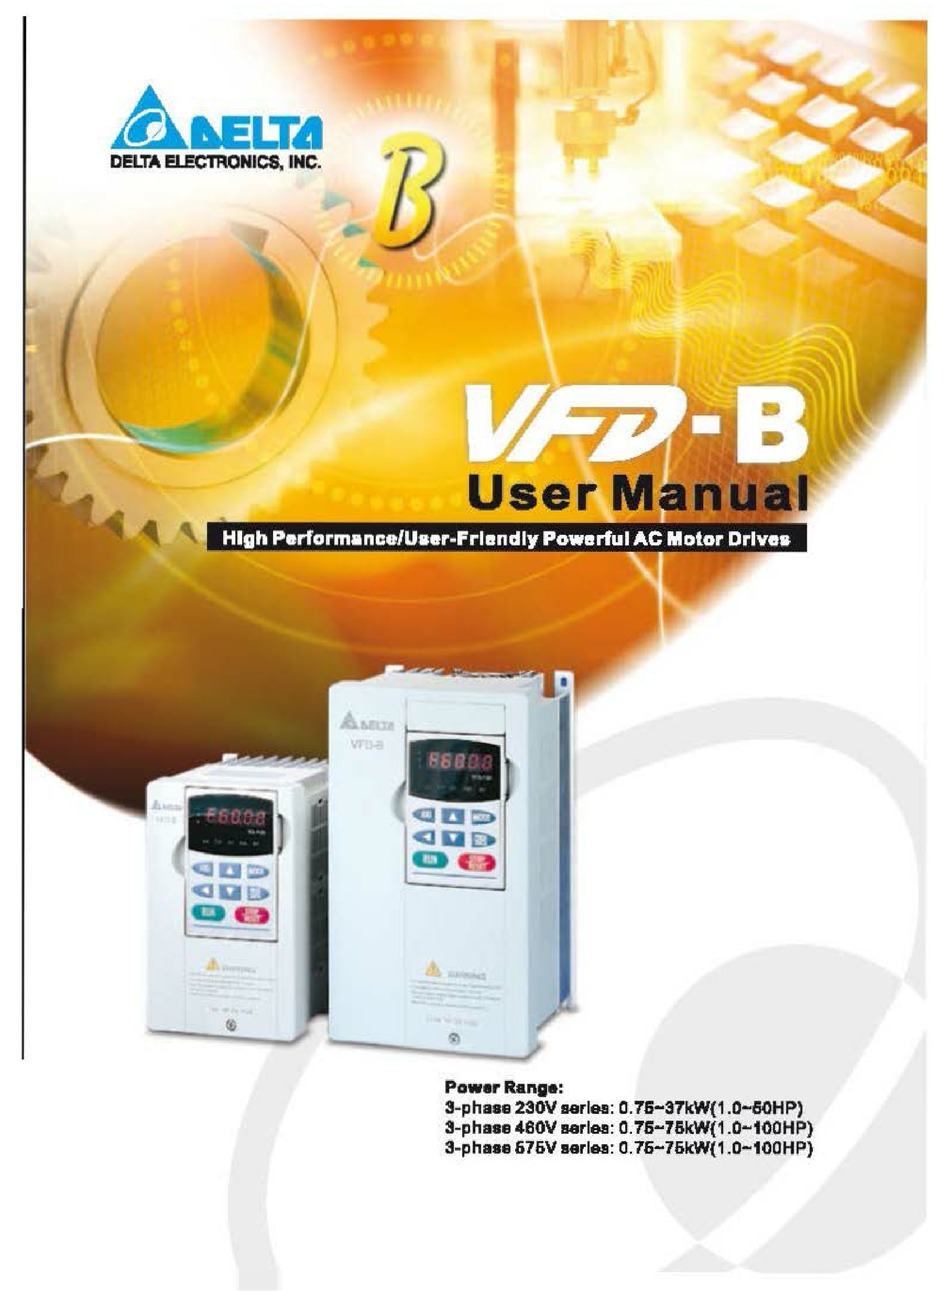 Delta inverter vfd b user manual